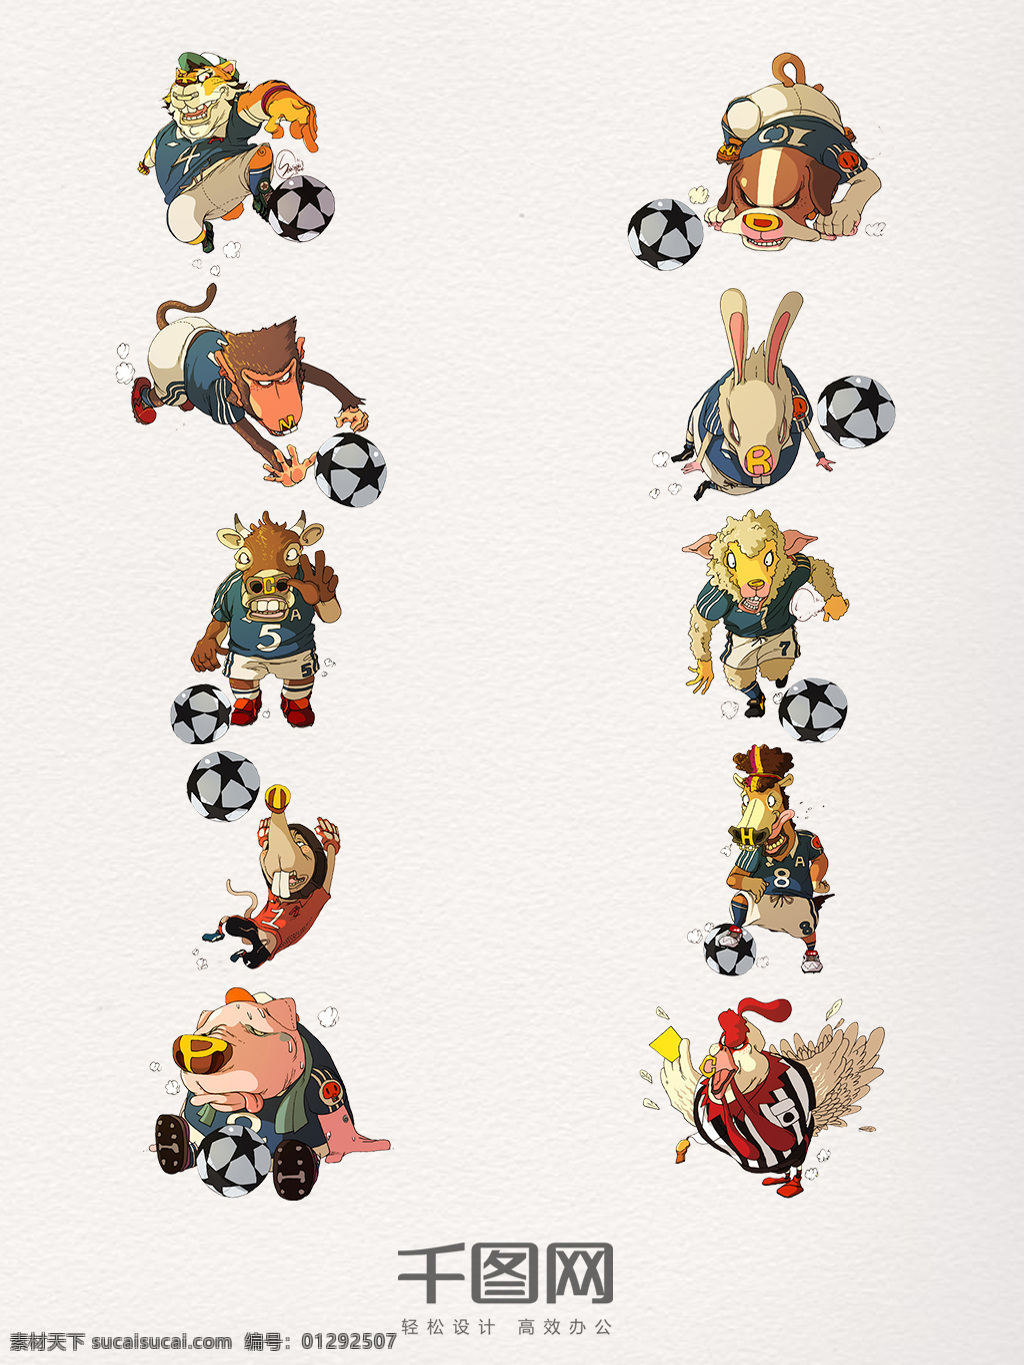 卡通 动物 足球 运动装 饰 图 世界足球日 足球运动 创意 彩色 可爱 体育运动 奥运会